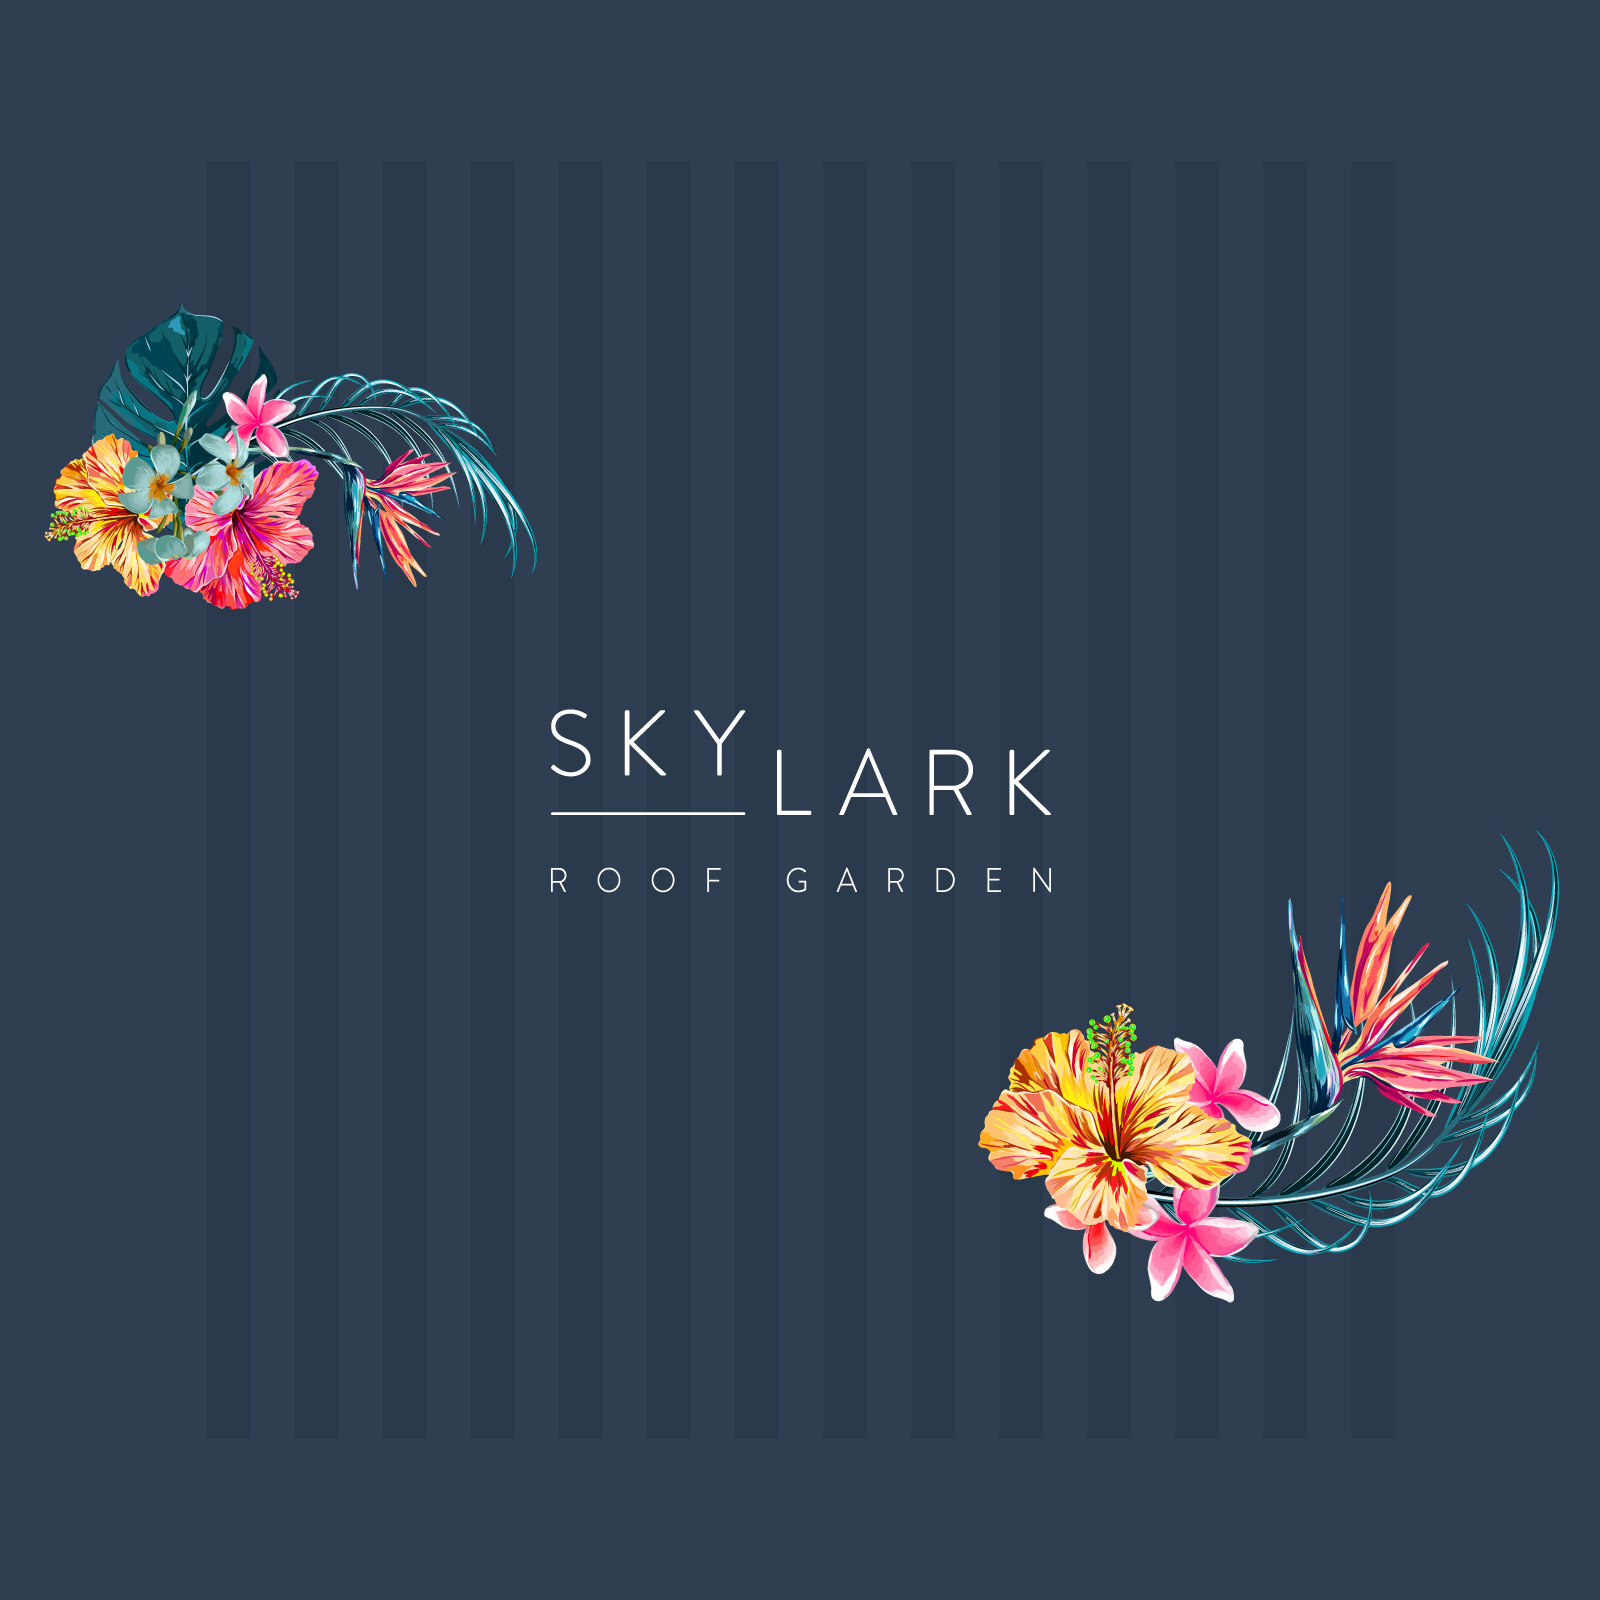 Skylark Roof Garden rooftop bar logo design branding